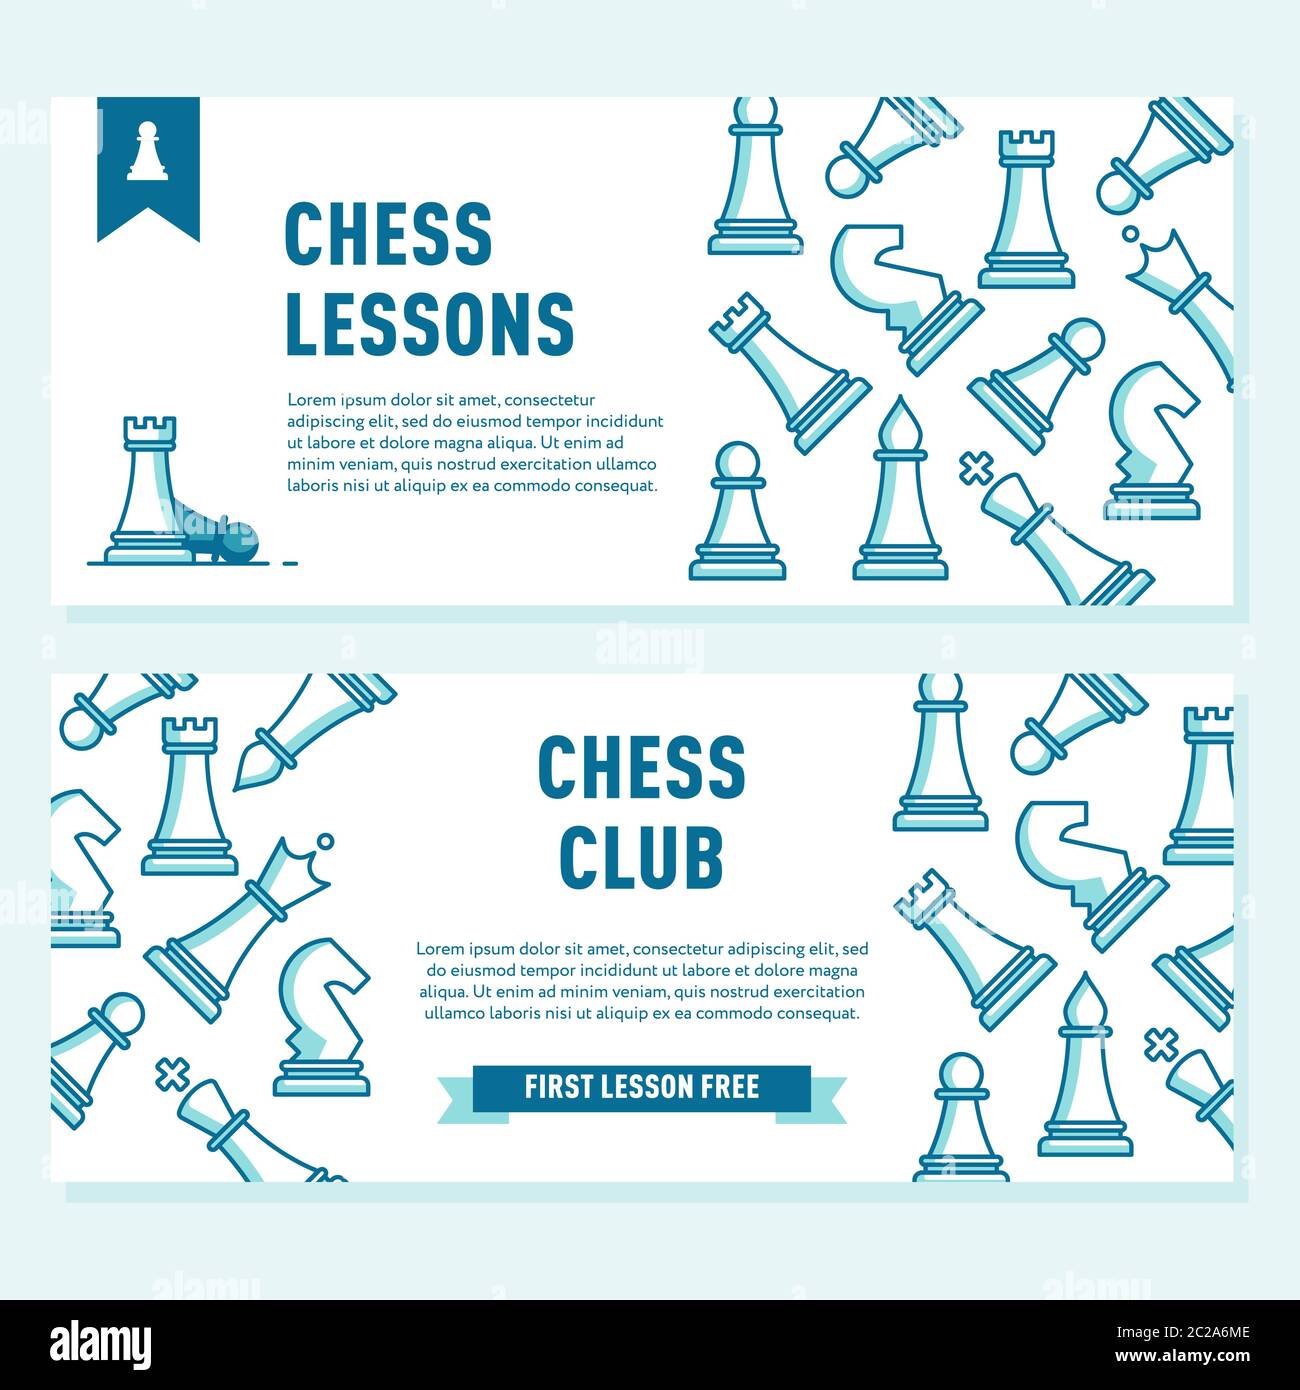 Schachclub Flyer Vorlage. Schachlektionen Konzept.Vorlage für Schachclub oder Schachschule. Stock Vektor